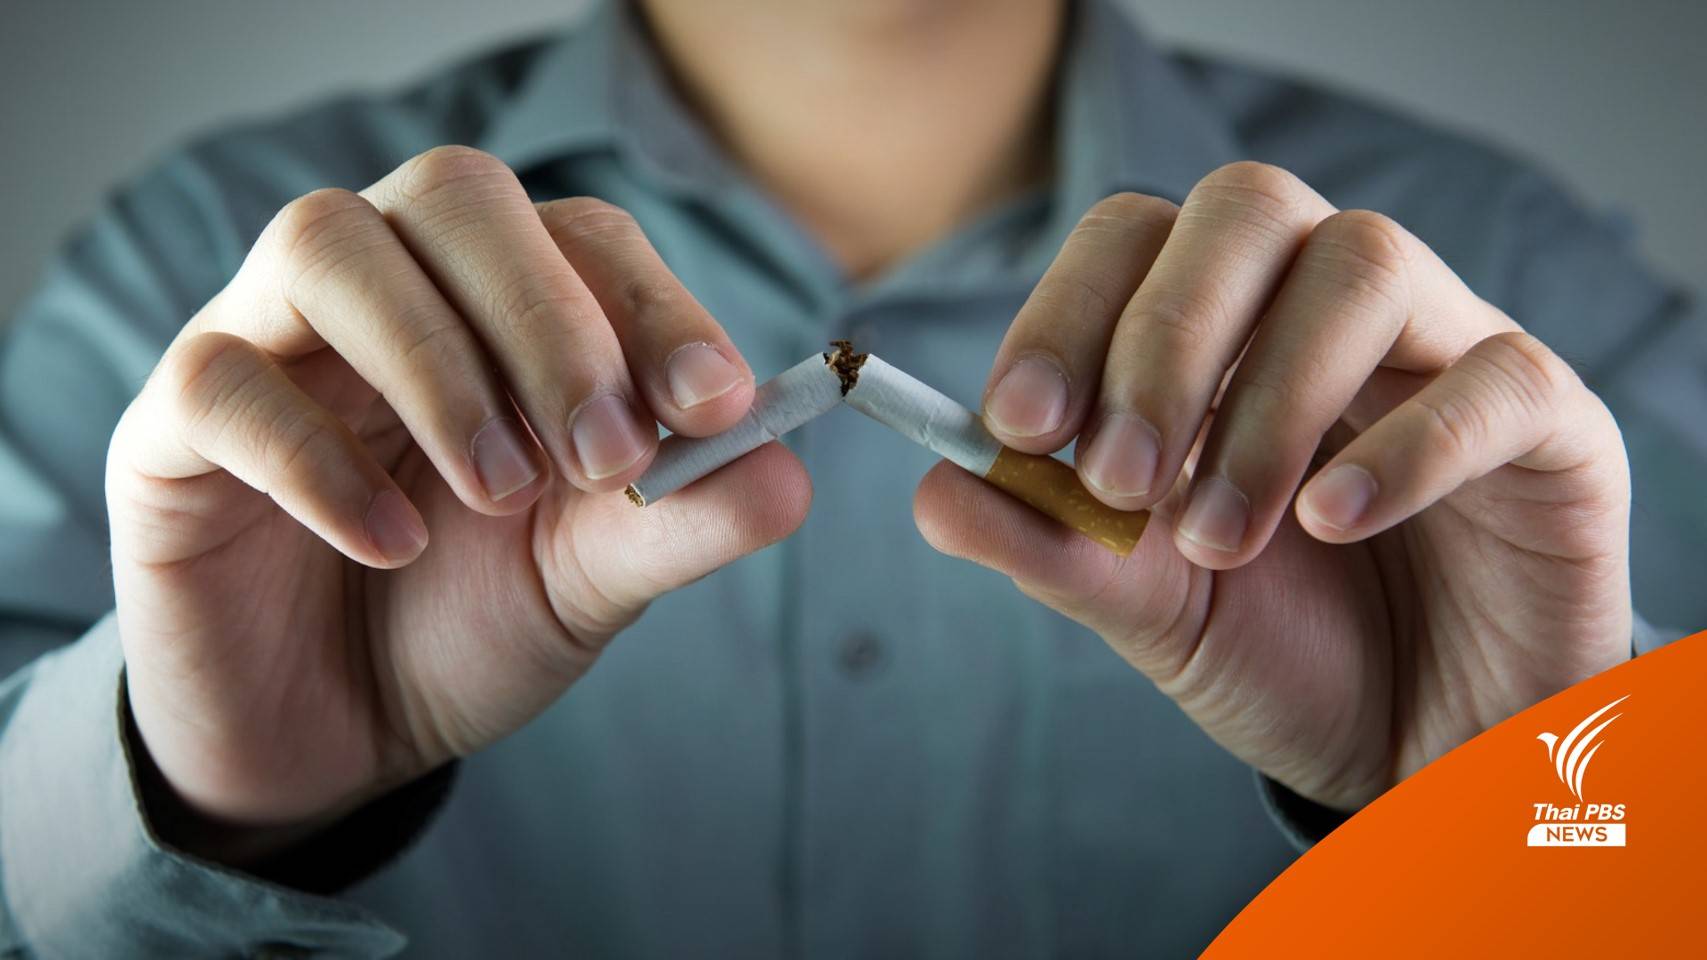  ครม.ผ่านร่างแผนปฏิบัติการควบคุมยาสูบ เดินหน้า 6 ยุทธศาสตร์ลดบริโภคยาสูบ 